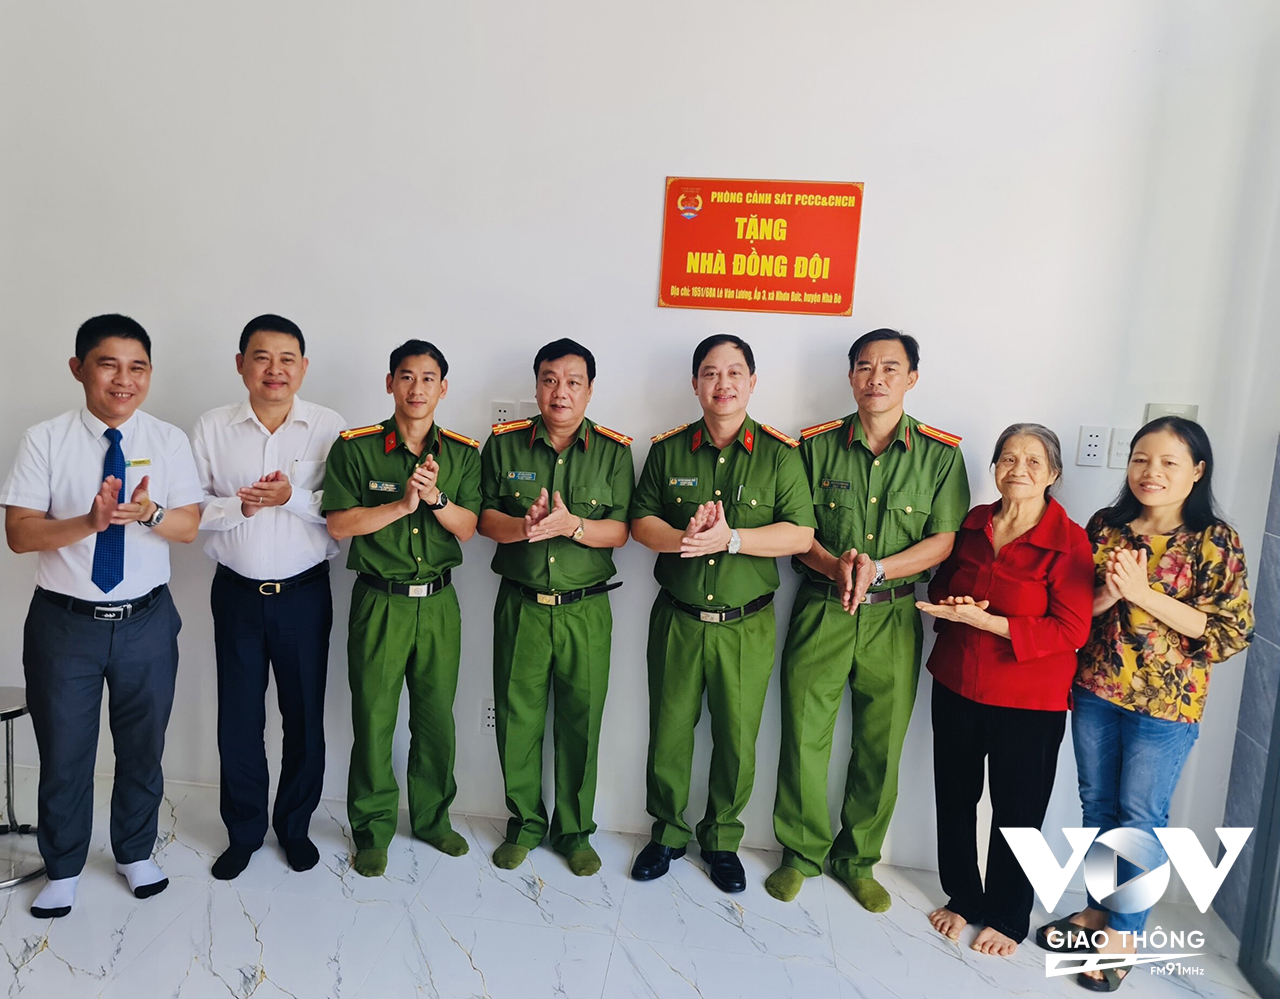 Lãnh đạo Phòng PC07 và các đơn vị trong buổi lễ bàn giao “Nhà đồng đội” cho thiếu tá Nguyễn Hữu Đạo